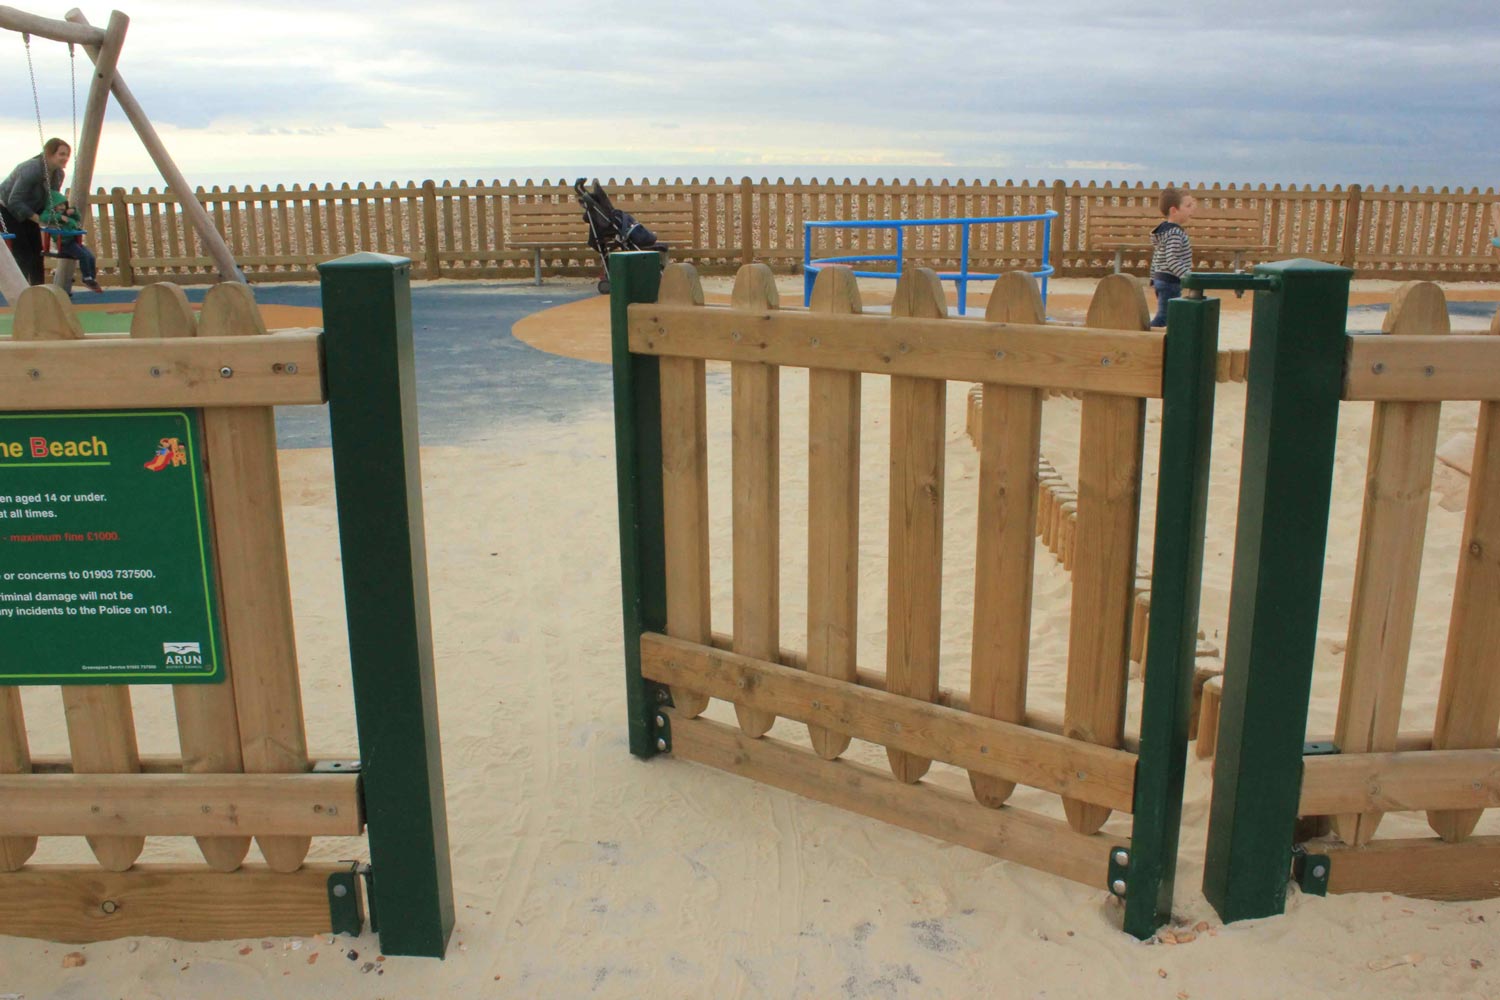 Playground gate